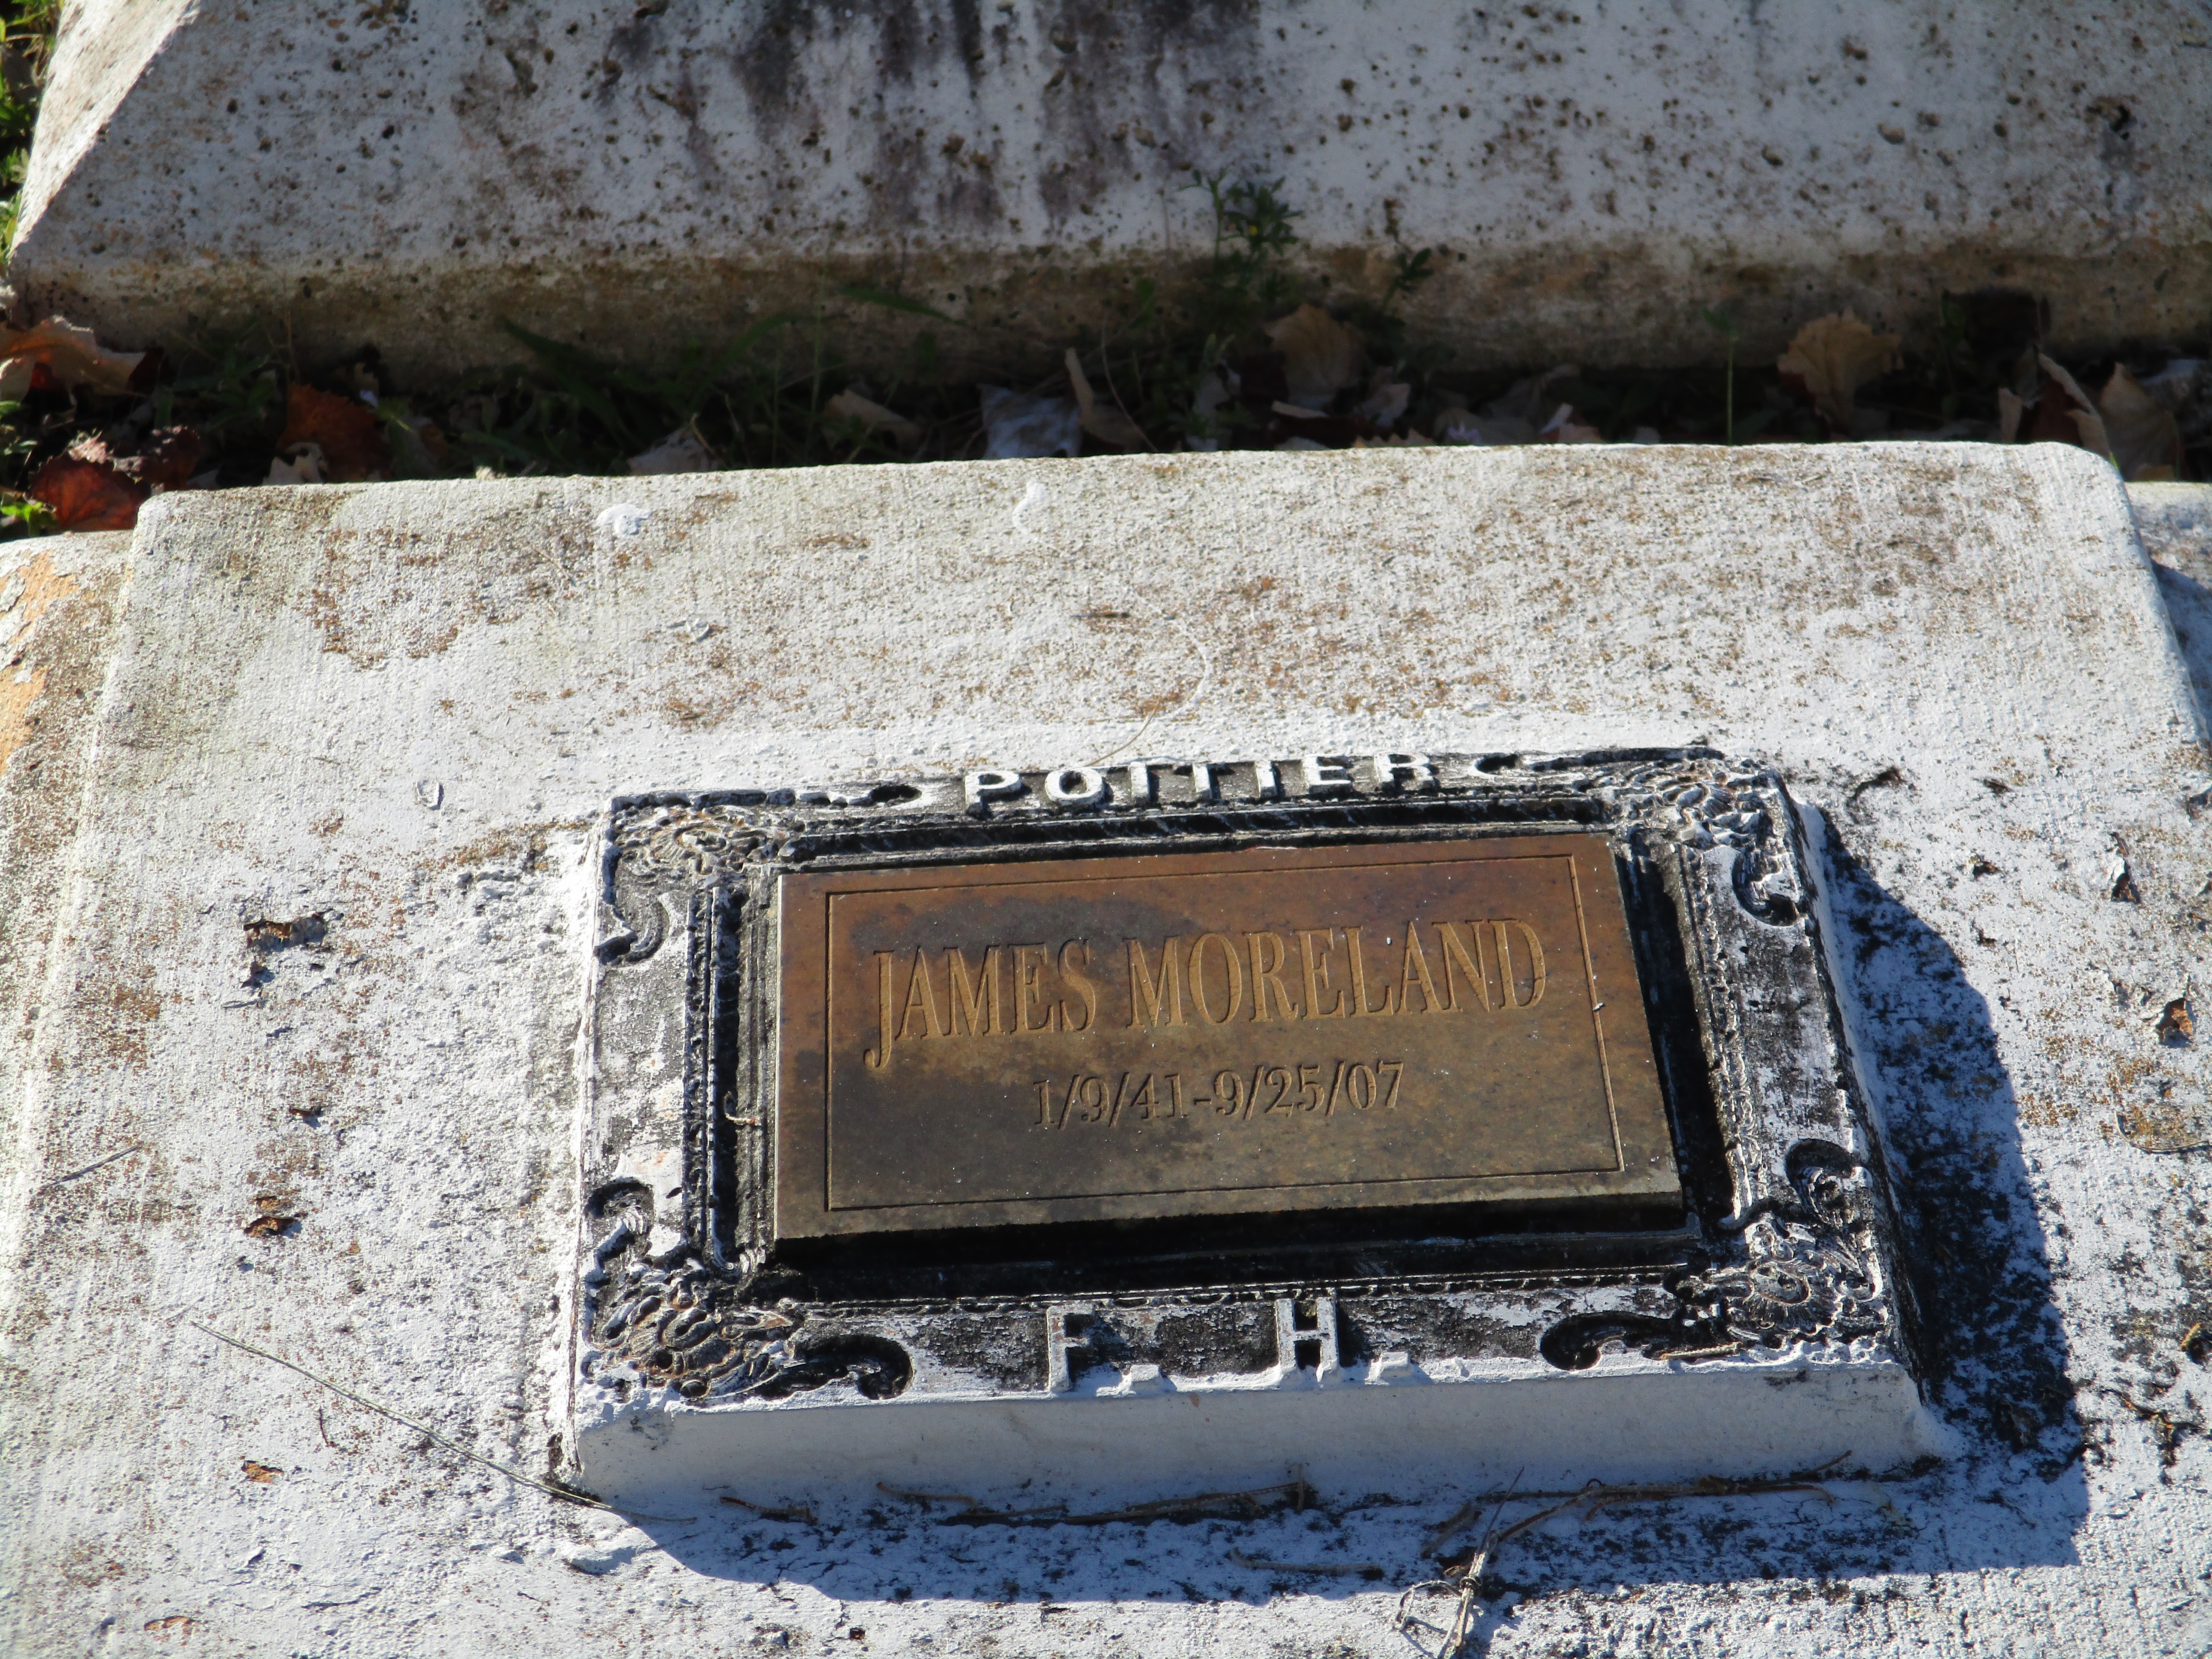 James Moreland